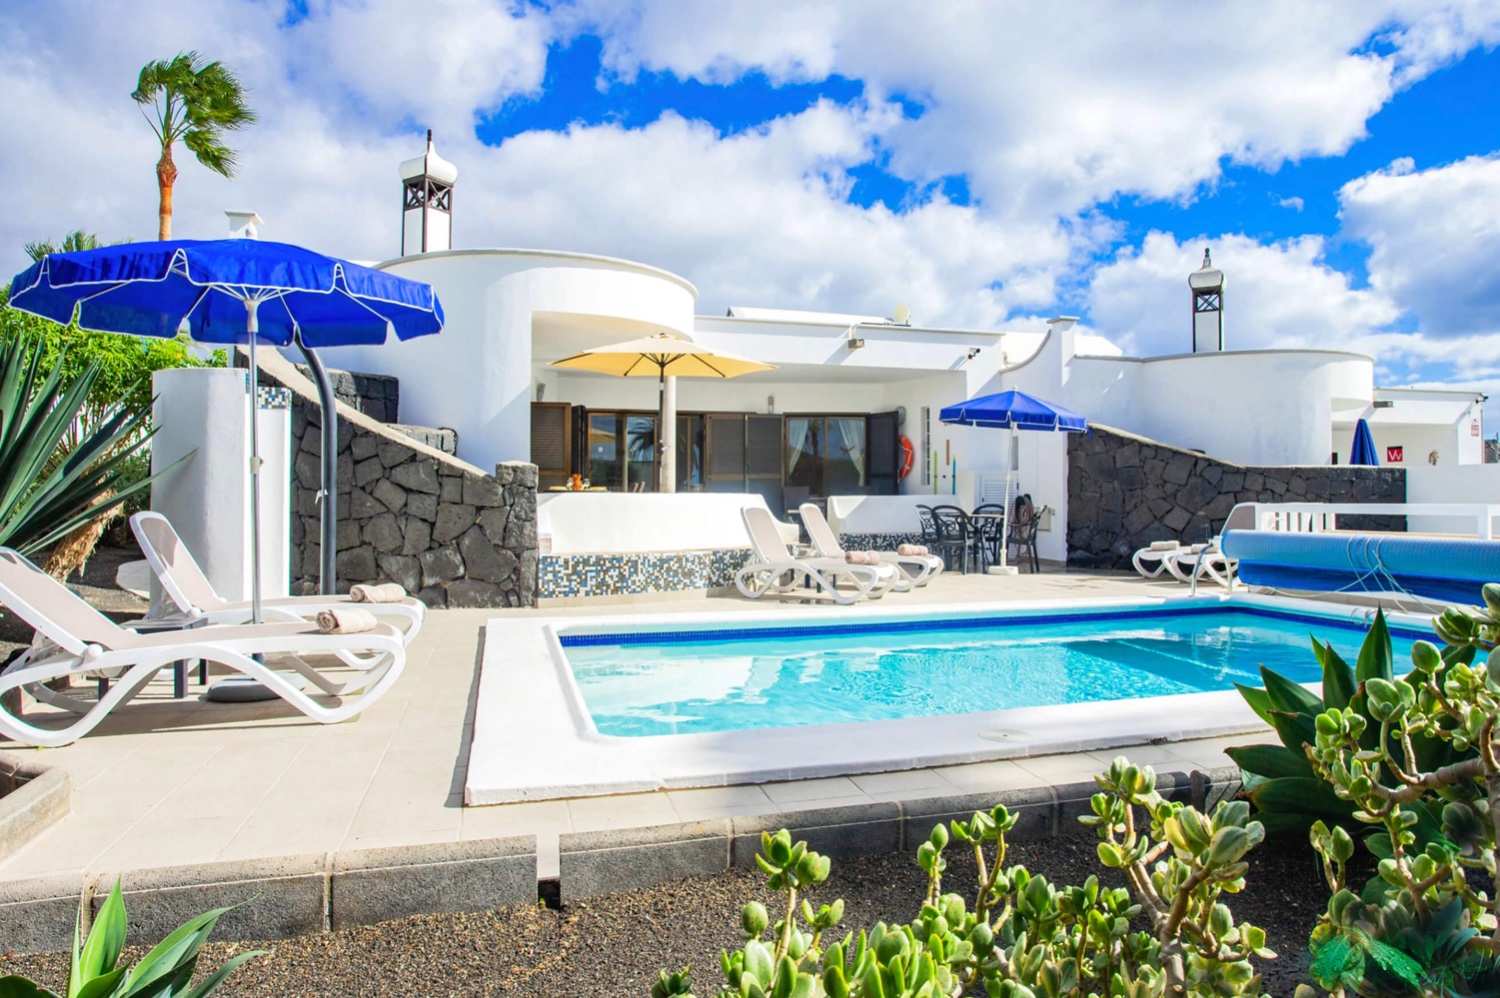 Casa con tre camere da letto e piscina privata riscaldata in un bellissimo complesso residenziale a Playa Blanca, nel sud dell'isola